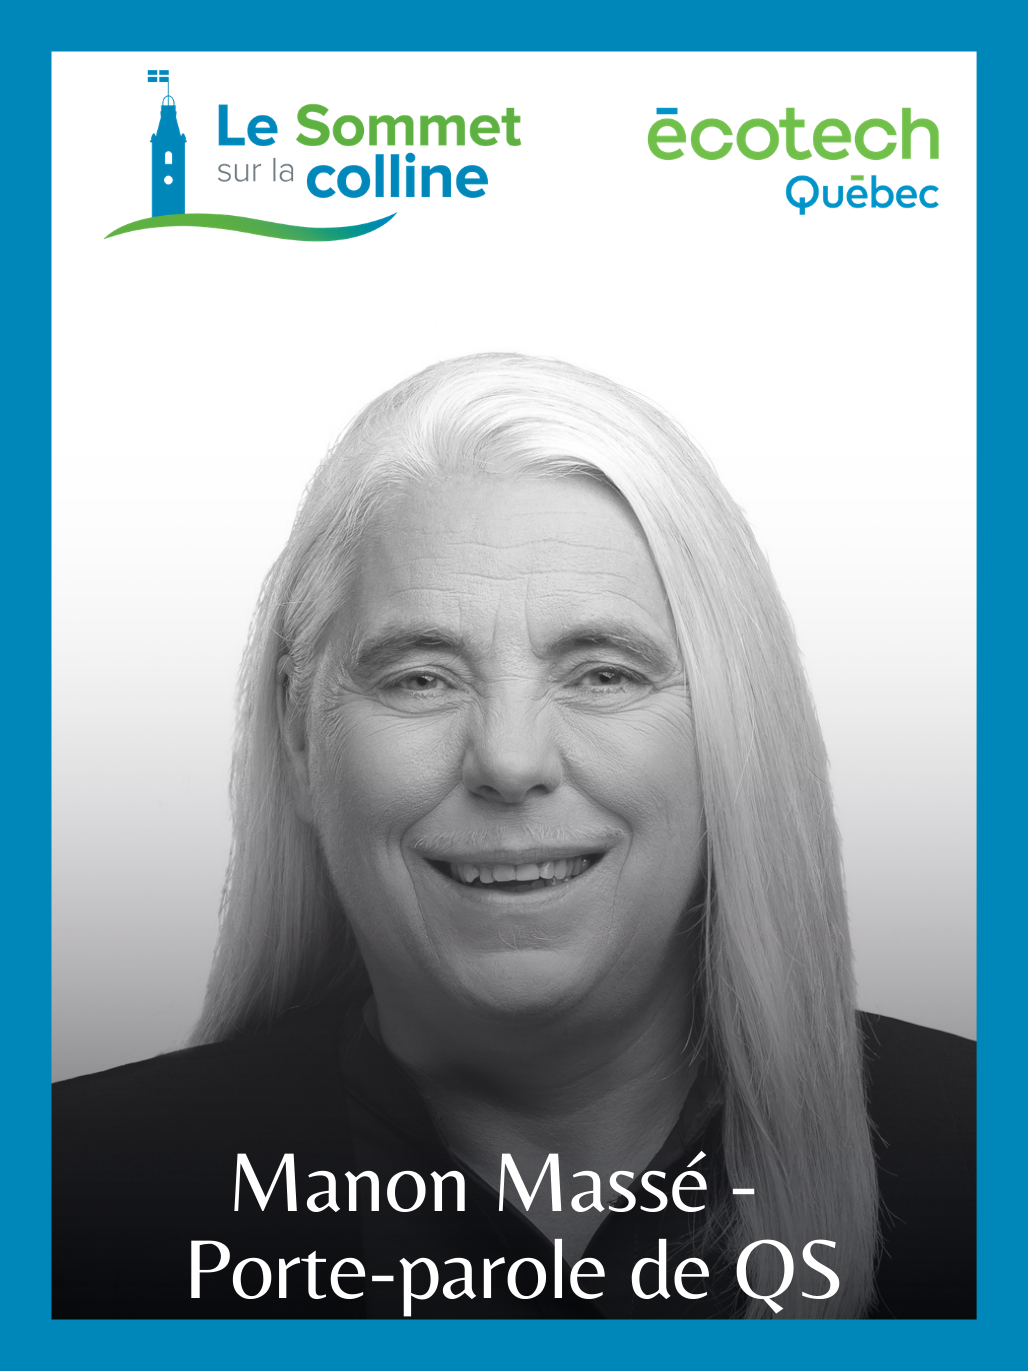 Manon Massé - QS